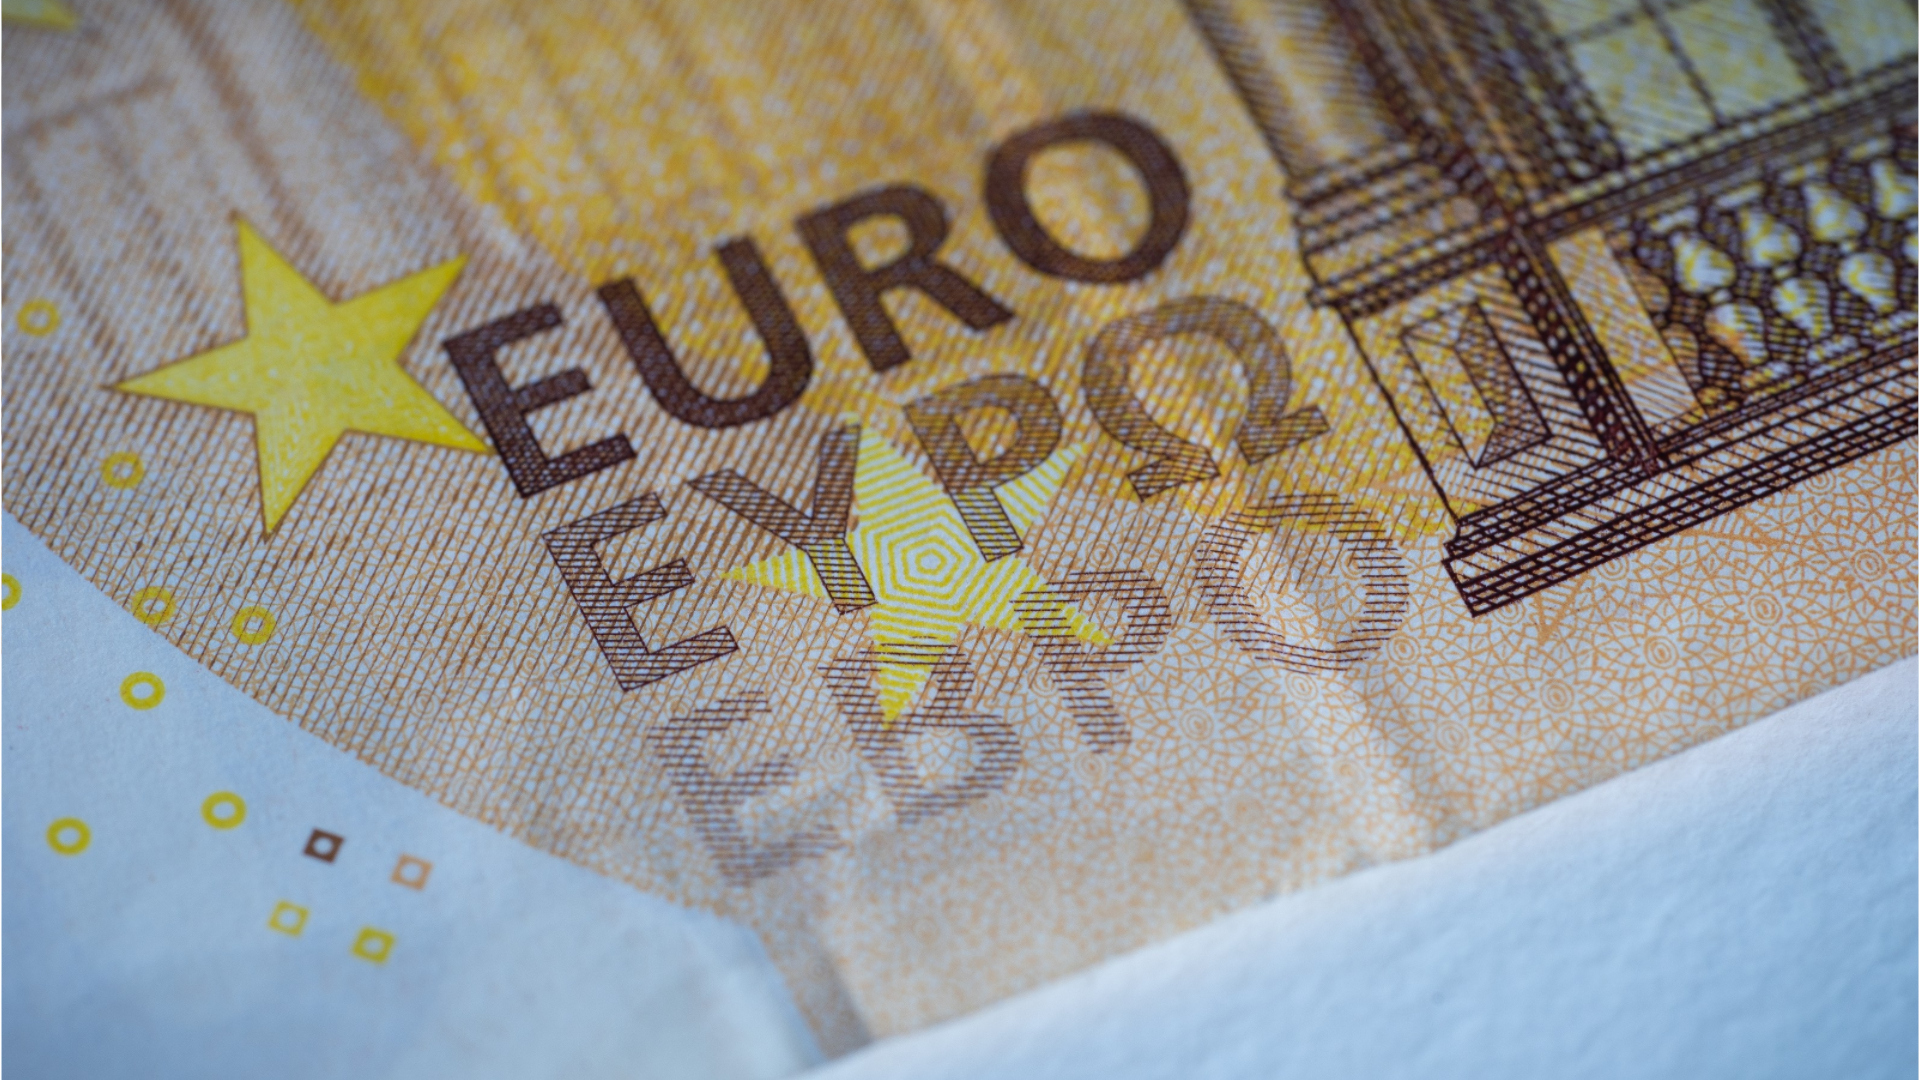 Nouveau billet de 0 euro : à quoi va-t-il servir ?